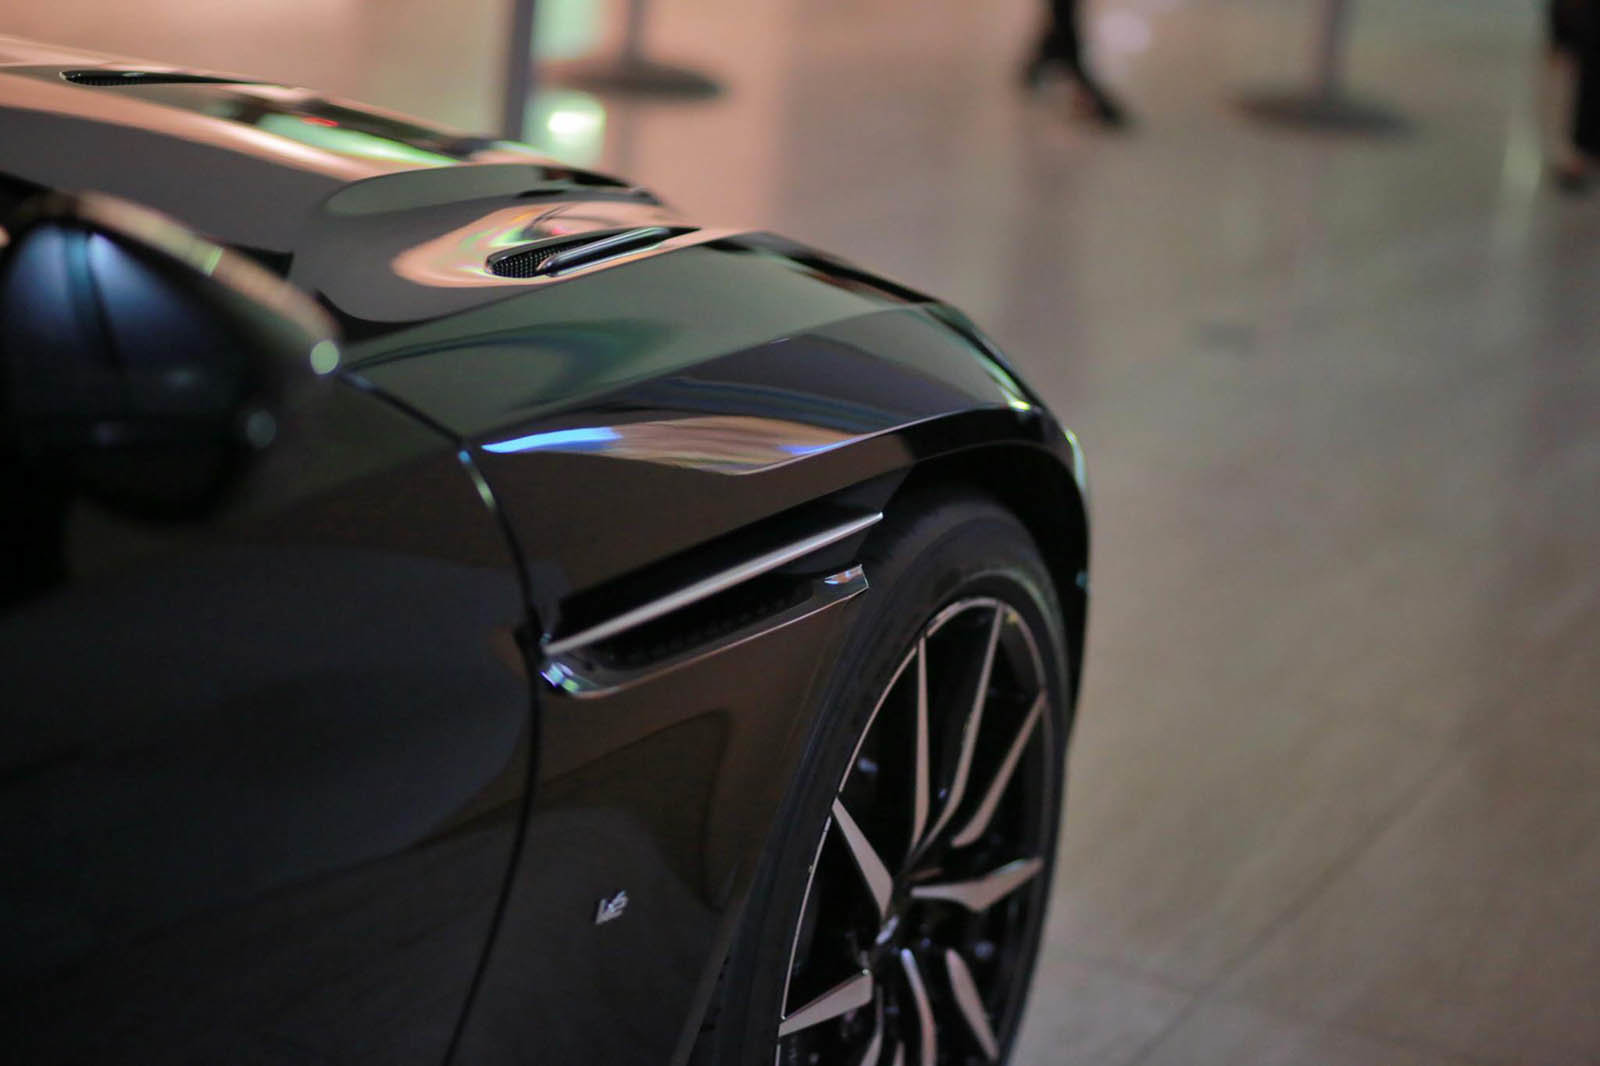 Automobilka Aston Martin prezentovala své nové modely v Japonsku